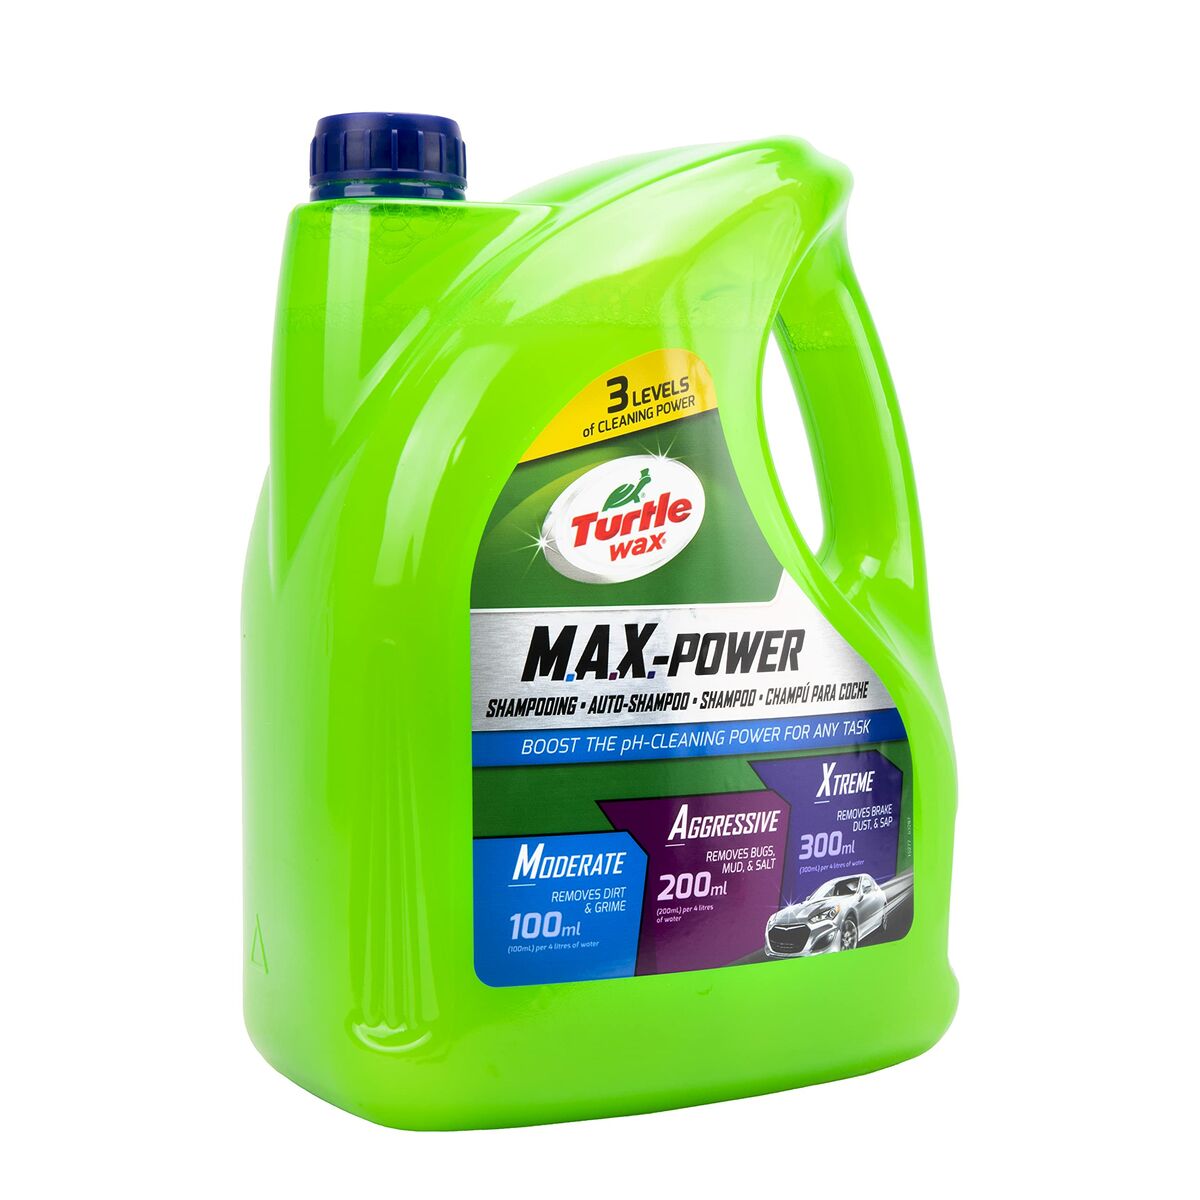 Detergente para automóvel Turtle Wax TW53287 4 L pH neutro